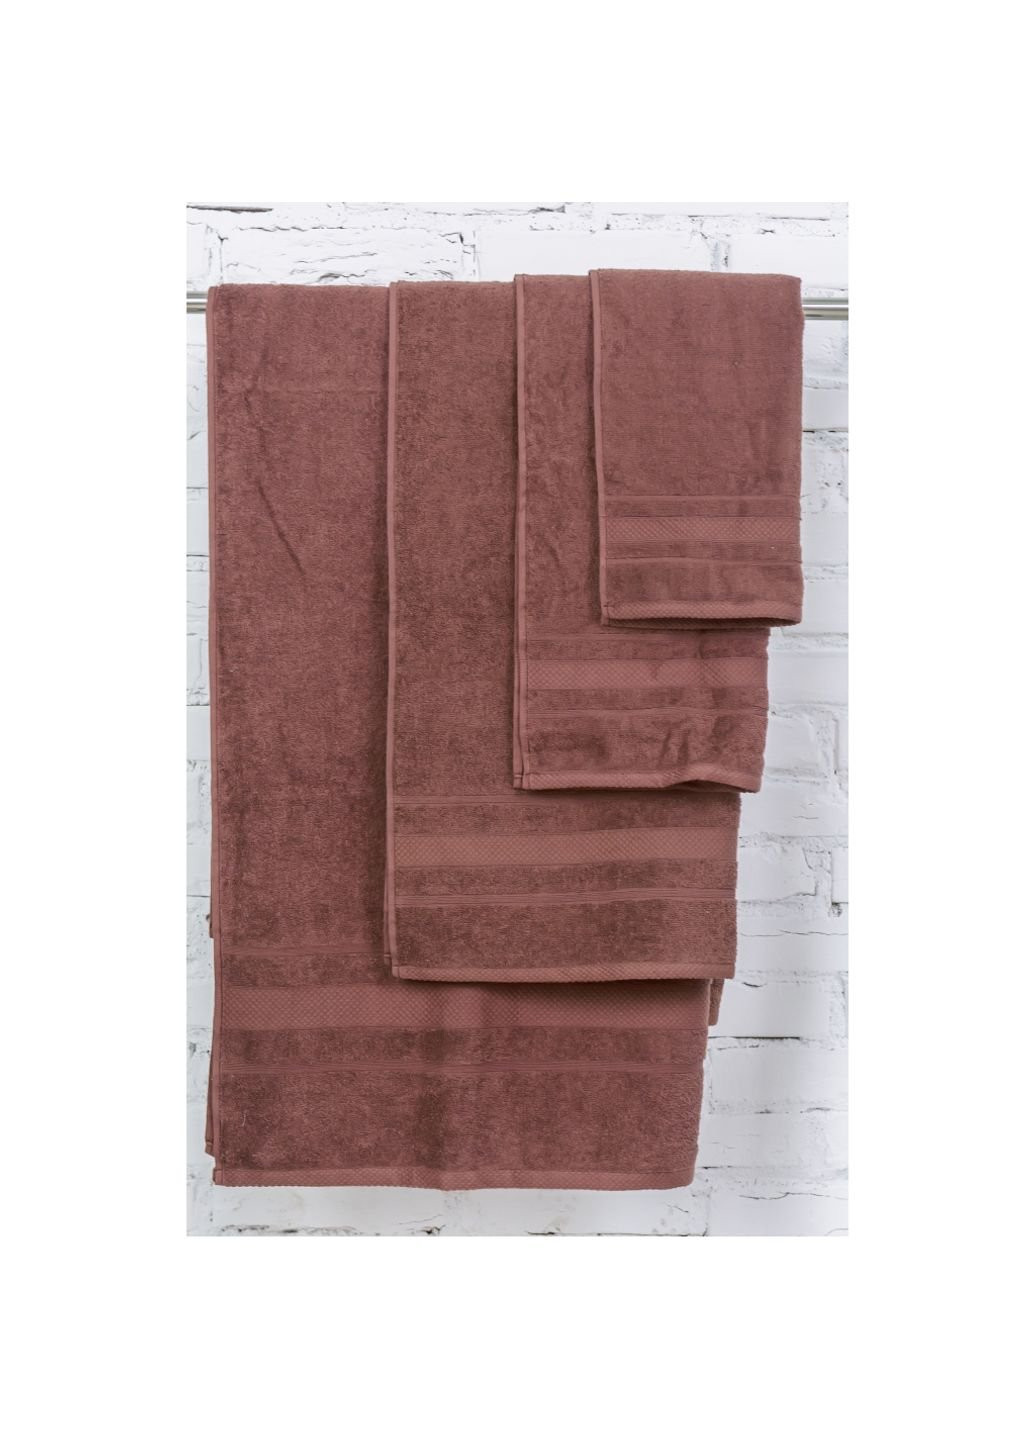 Mirson полотенце набор банный №5071 elite softness brown 40х70, 50х90, 70х140 (2200003975635) коричневый производство - Украина